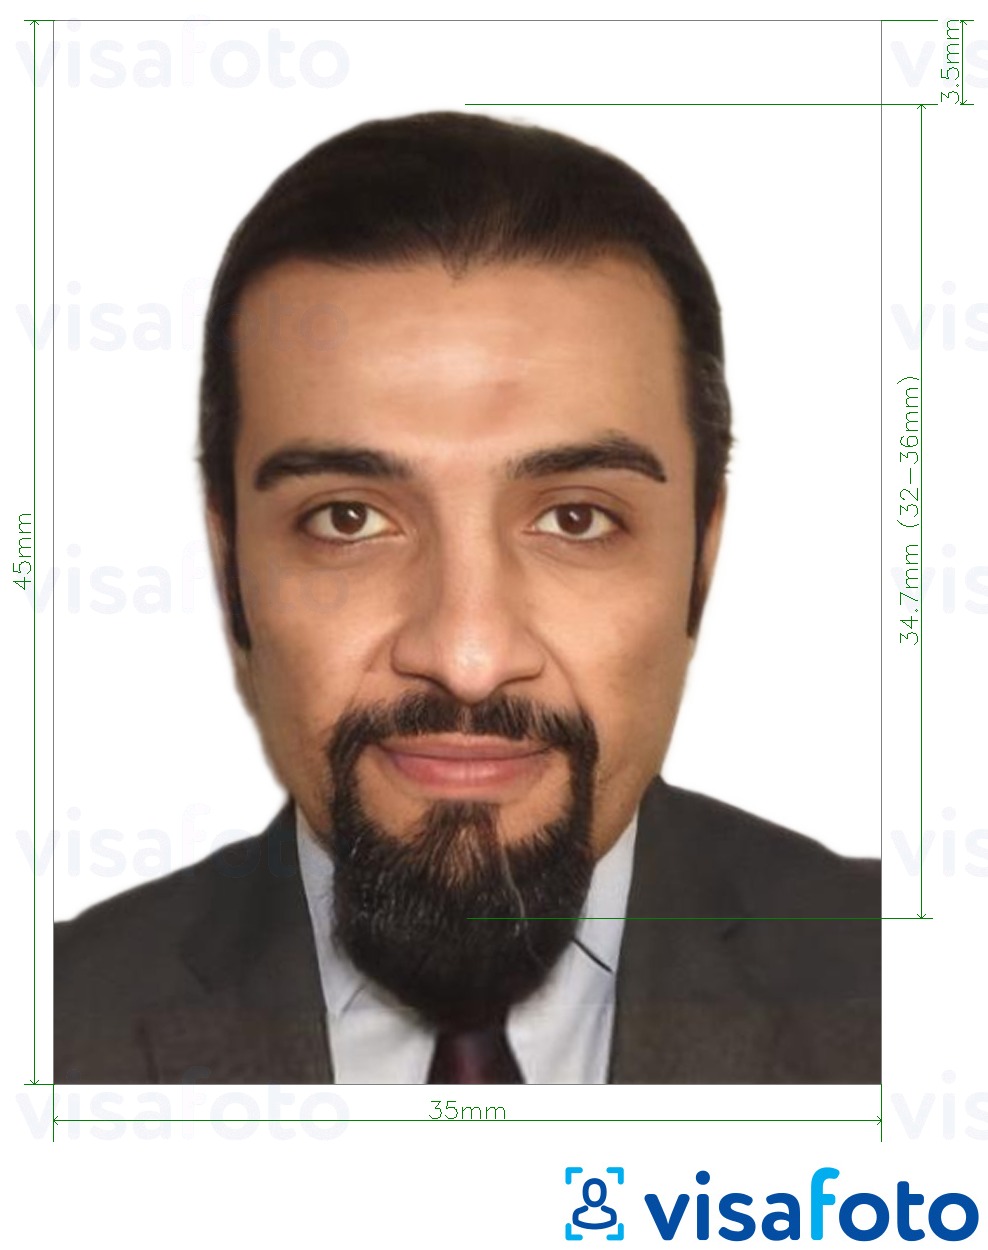 نمونه ی یک عکس برای پاسپورت الجزایر 35x45 میلی متر (3.5x4.5 سانتی متر) با مشخصات دقیق